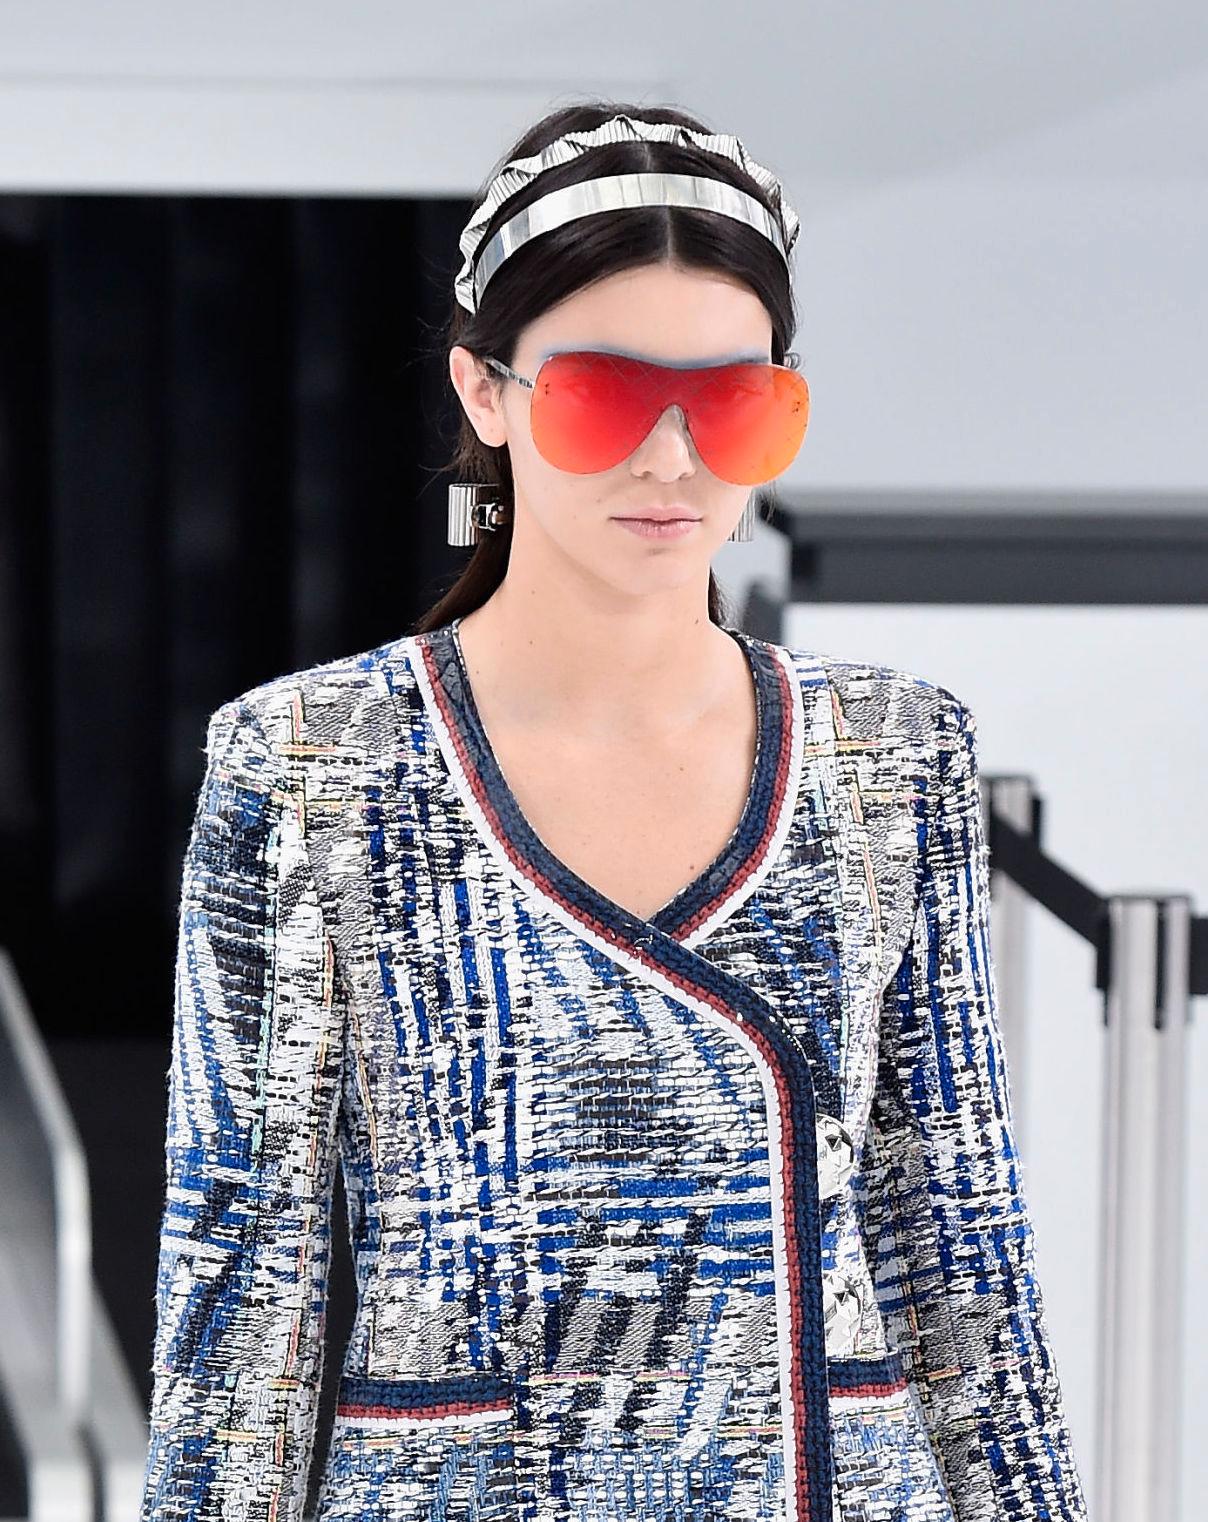 FARGESTERKE: Kendall Jenner var iført et gigantisk solbrillepar med speilglass under Chanels visning i oktober. Foto: Getty Images